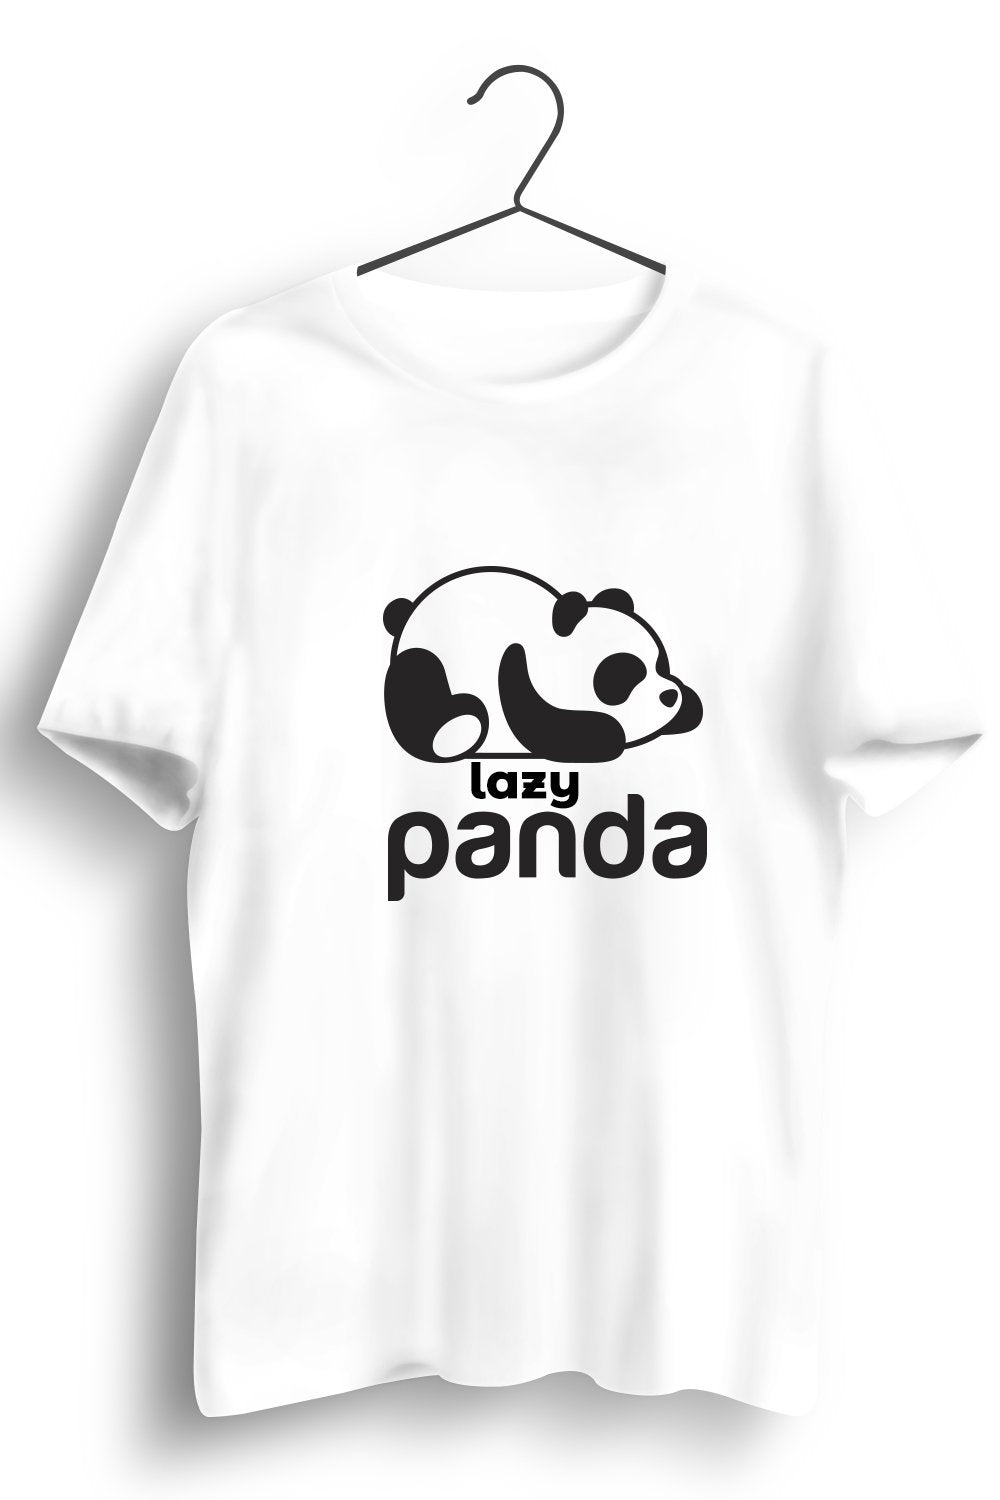 Lazy Panda Graphic Printed White Tshirt